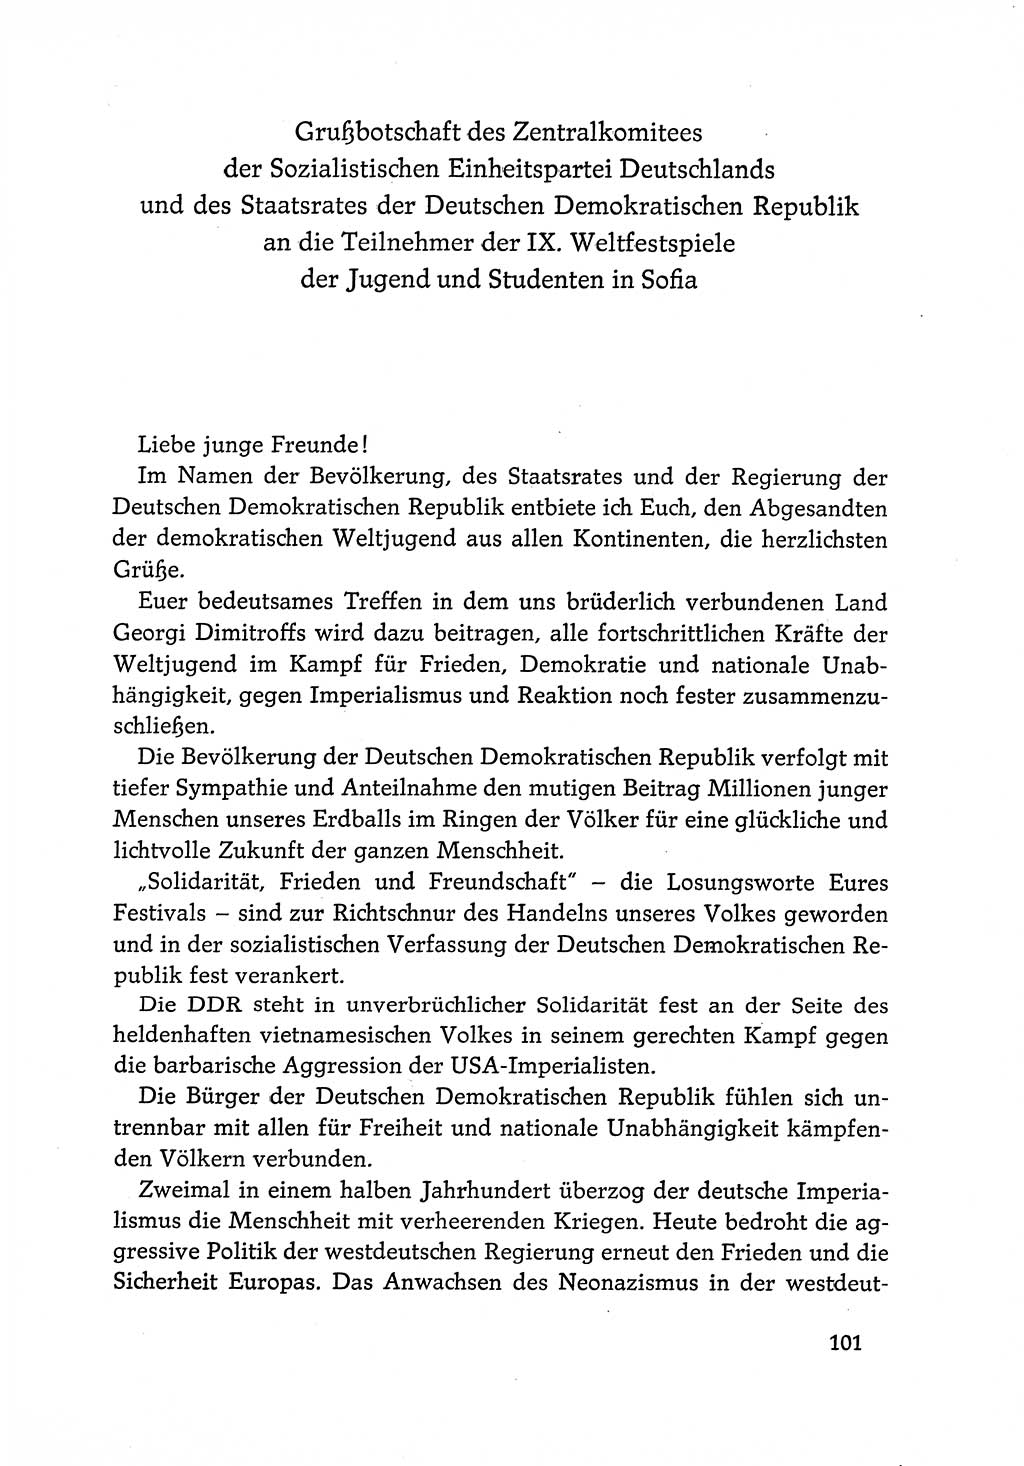 Dokumente der Sozialistischen Einheitspartei Deutschlands (SED) [Deutsche Demokratische Republik (DDR)] 1968-1969, Seite 101 (Dok. SED DDR 1968-1969, S. 101)